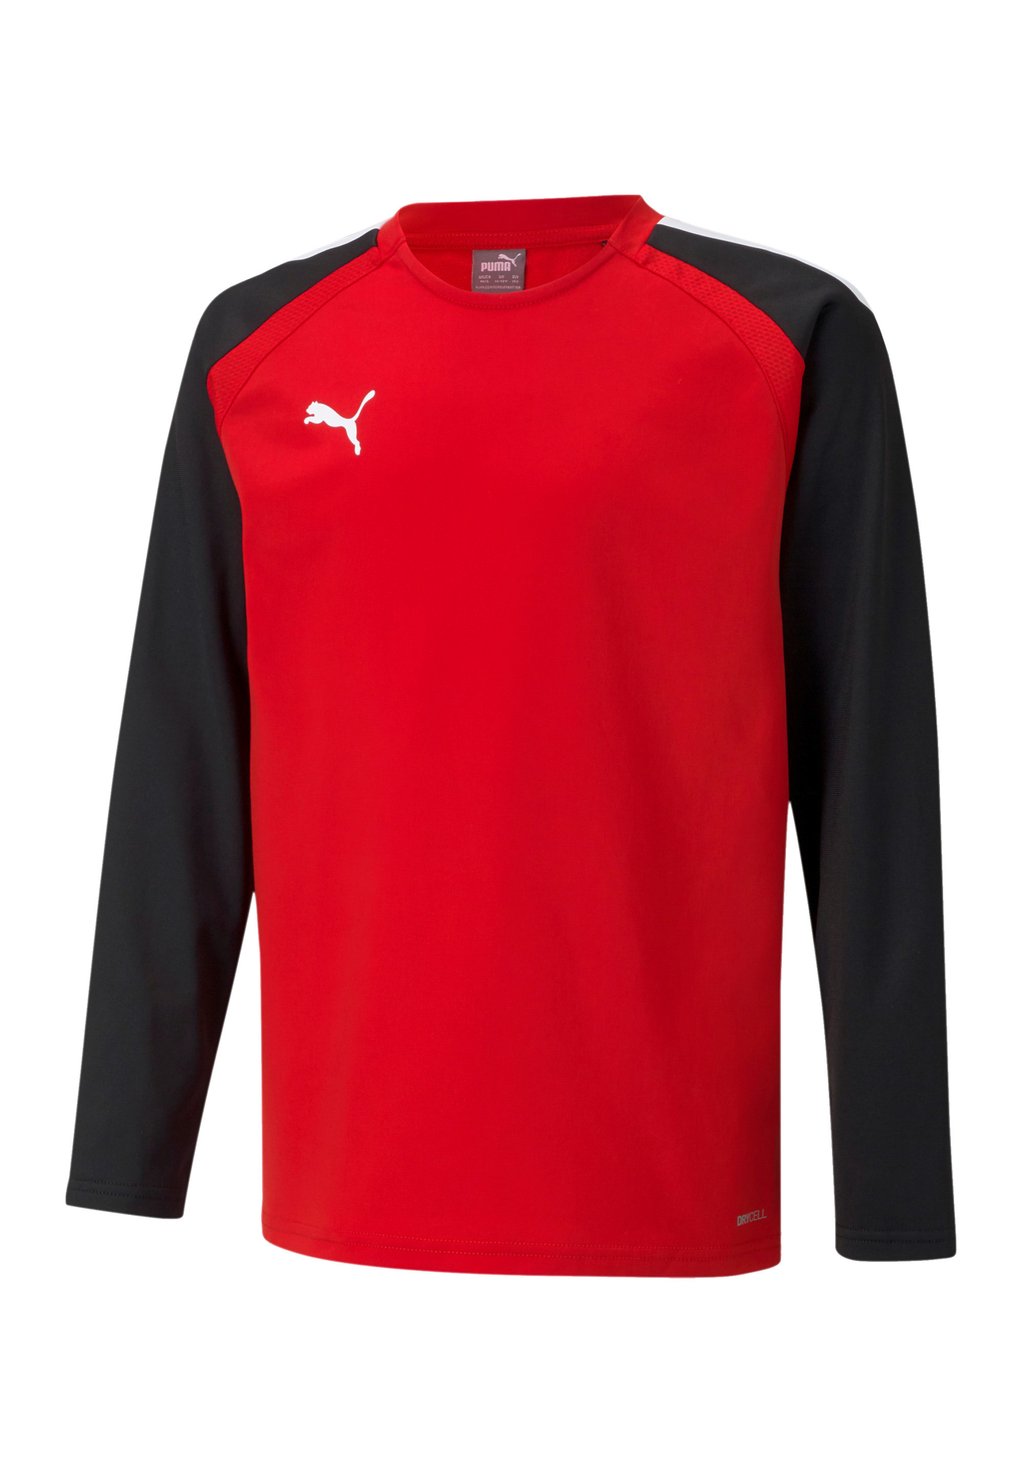 Рубашка с длинным рукавом Puma, цвет red, black